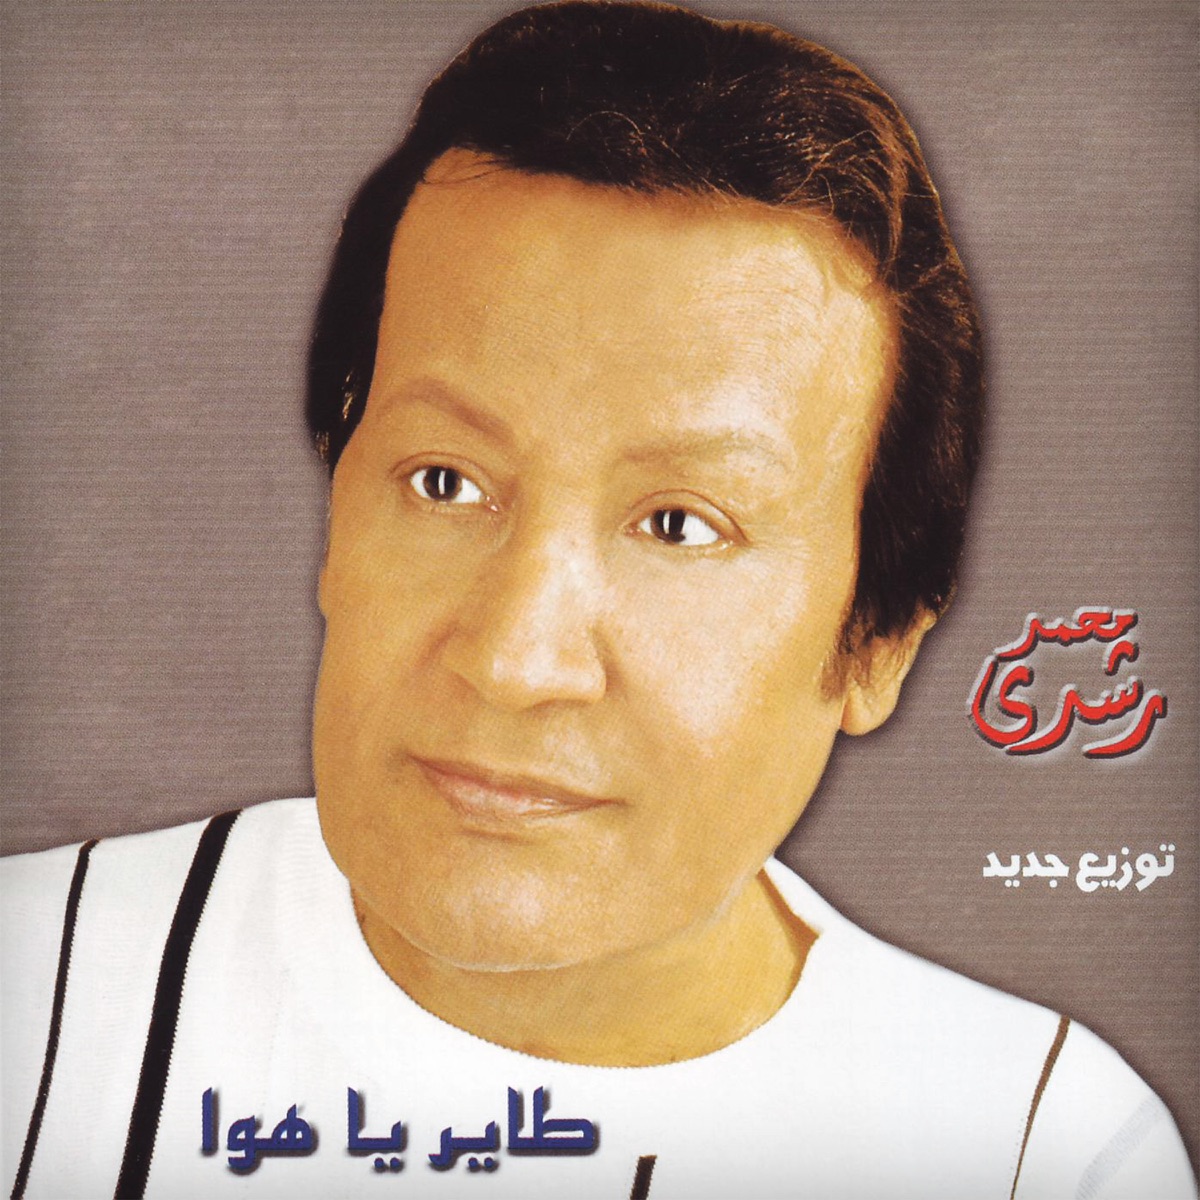 كعب الغزال” álbum de محمد رشدي en Apple Music